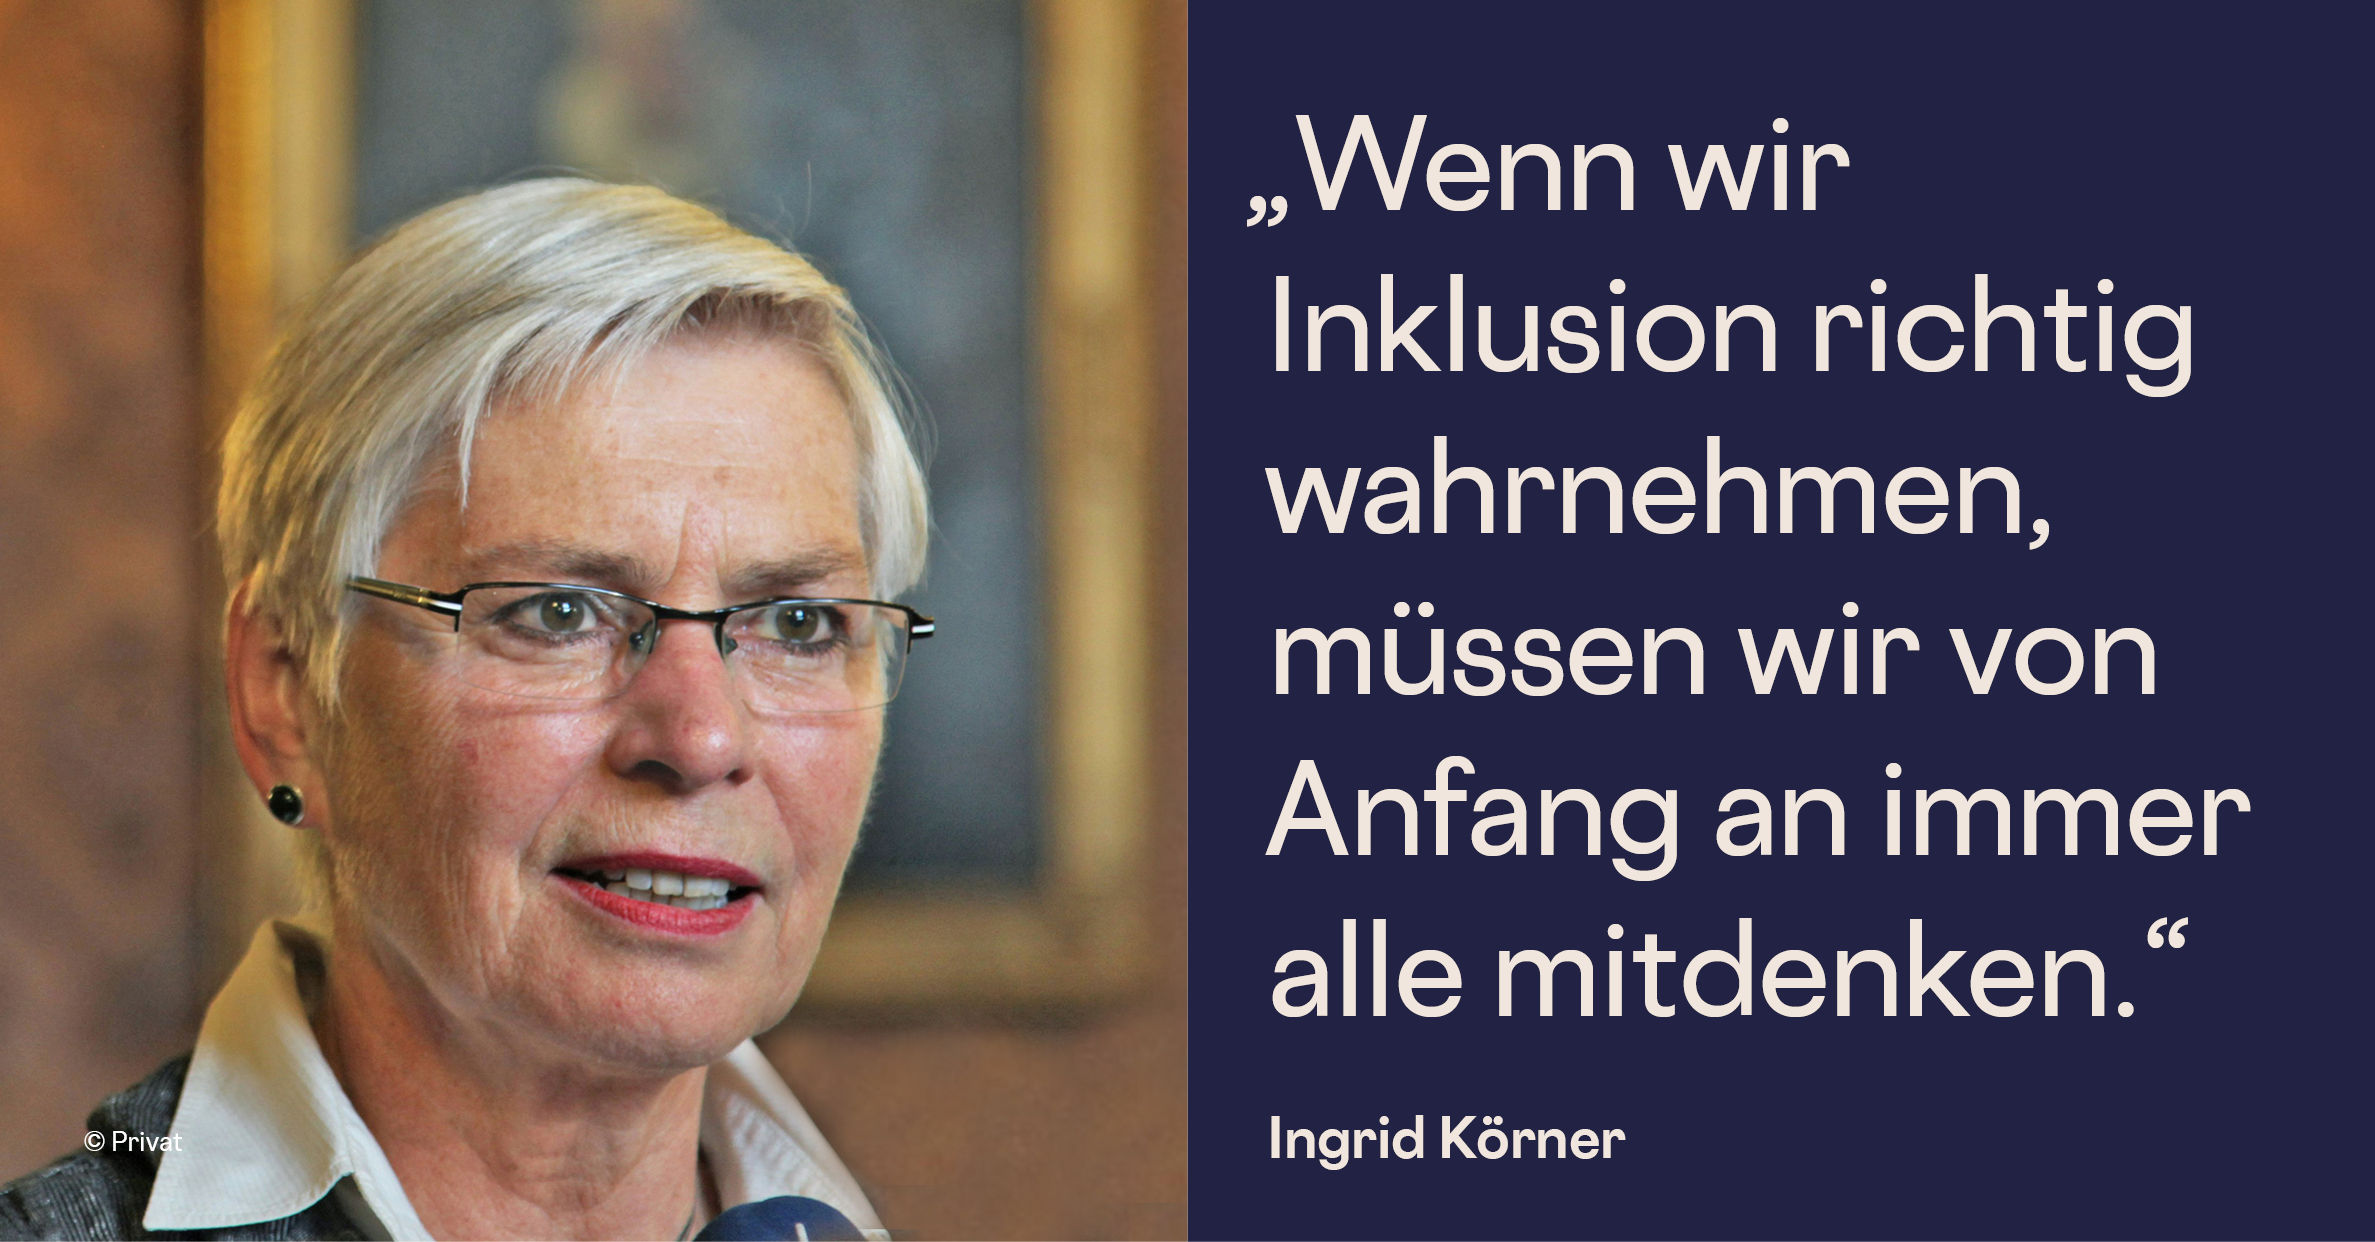 Podcastgast Ingrid Körner, ehemalige Senatskoordinatorin für die Gleichstellung behinderter Menschen